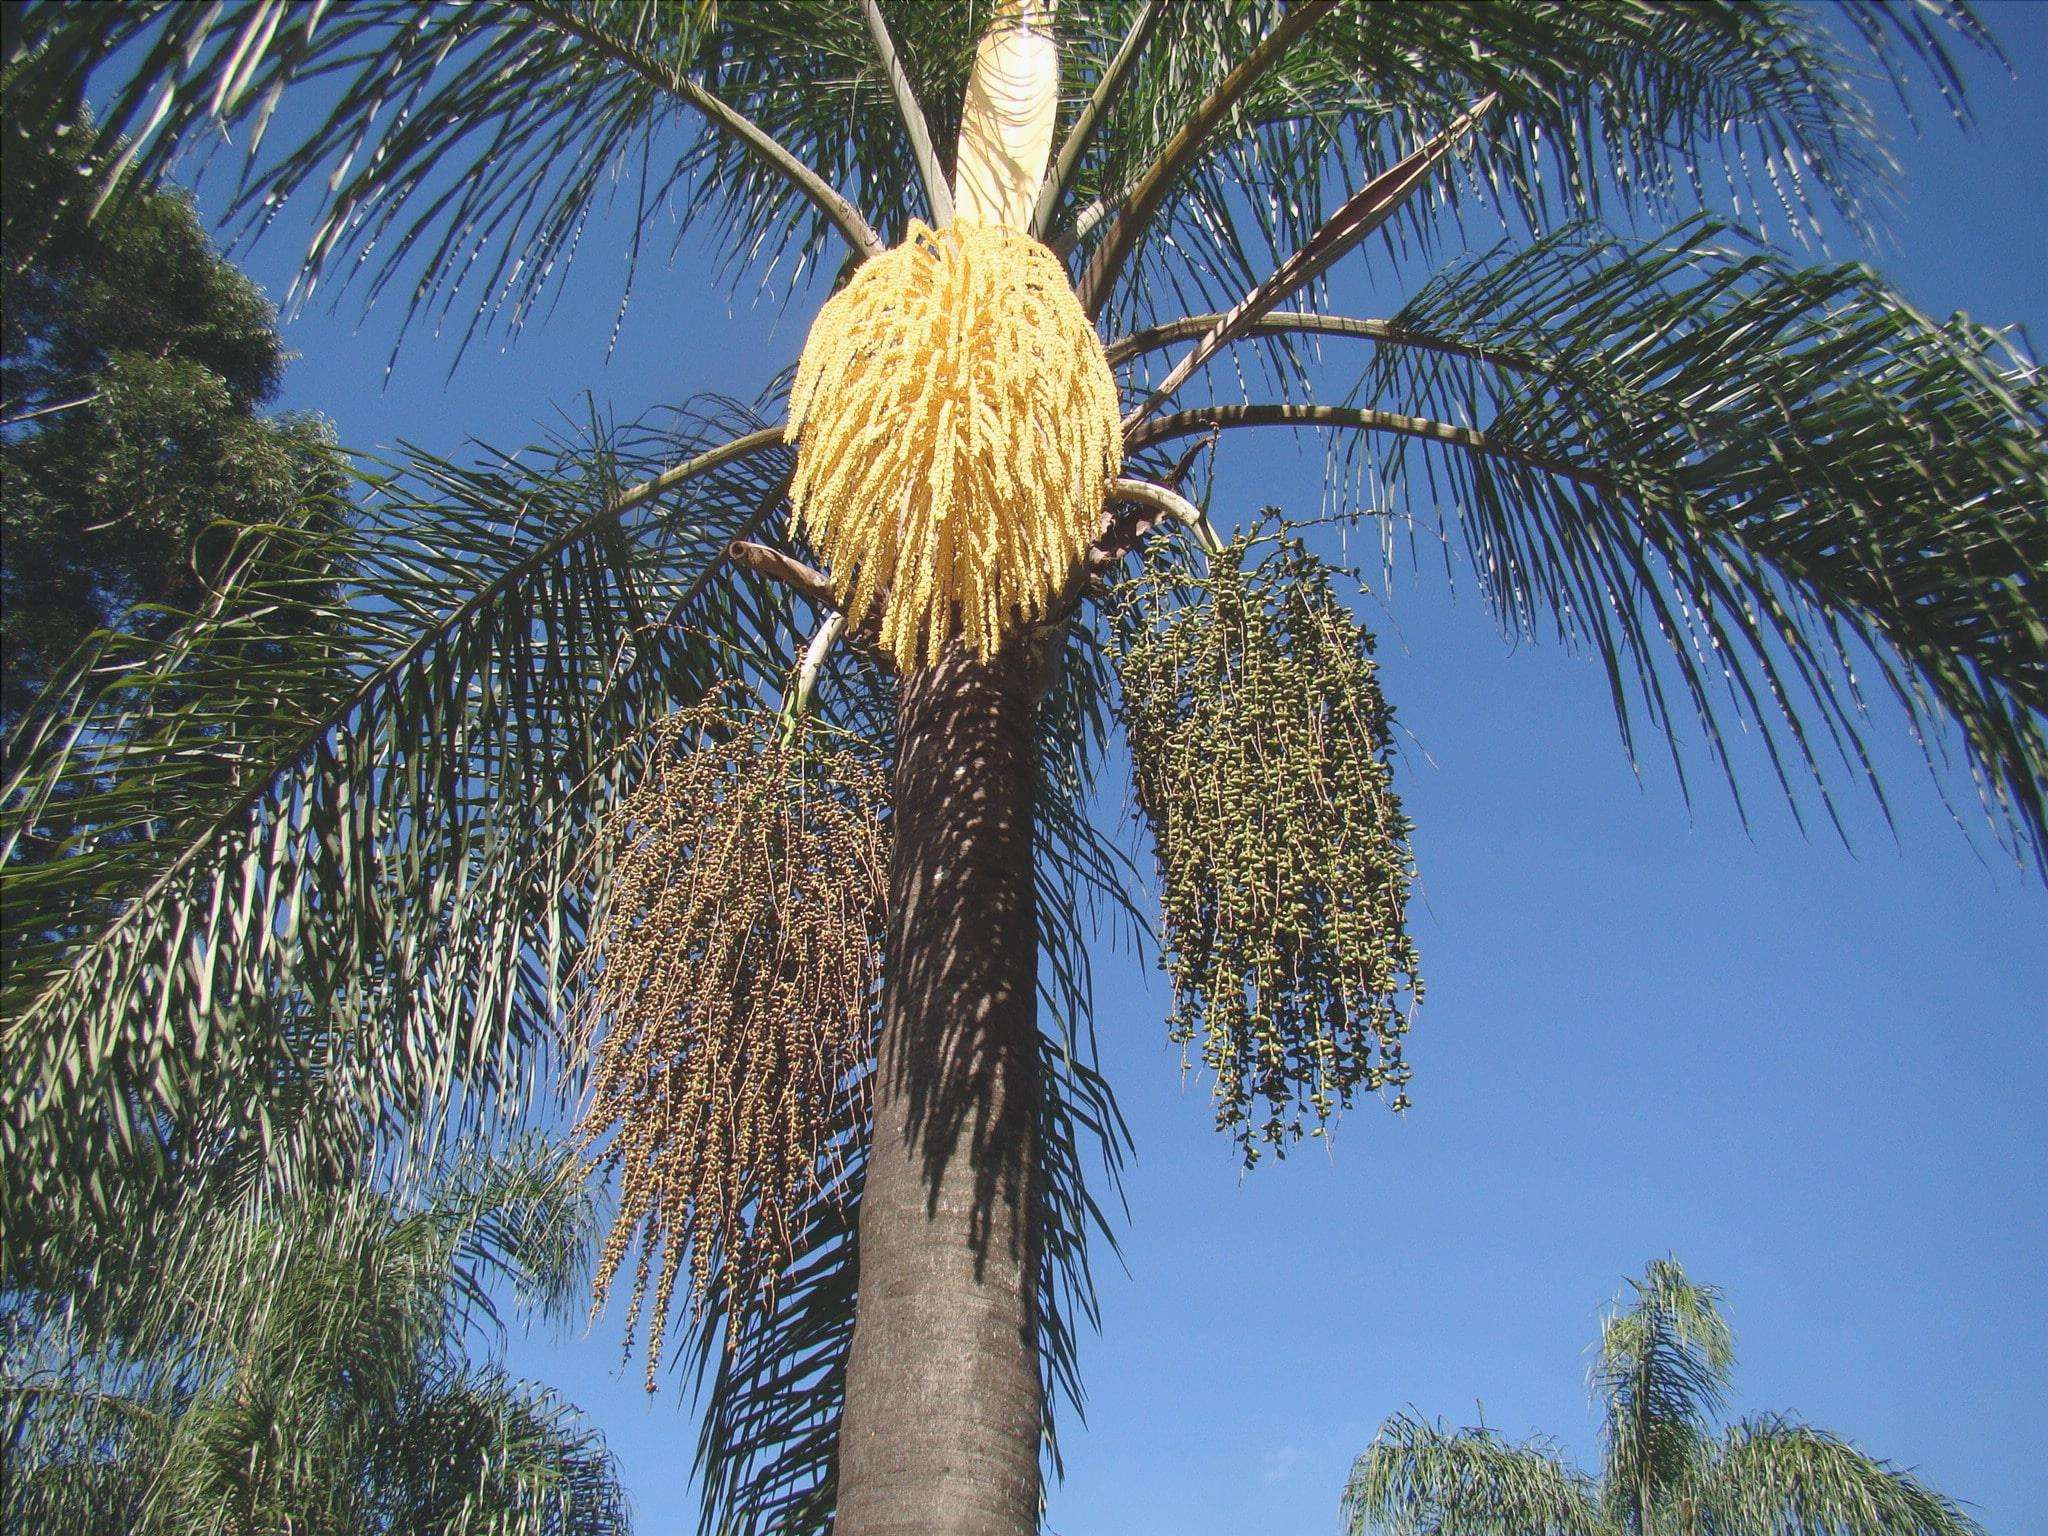 La noce di cocco piumata è una palma.